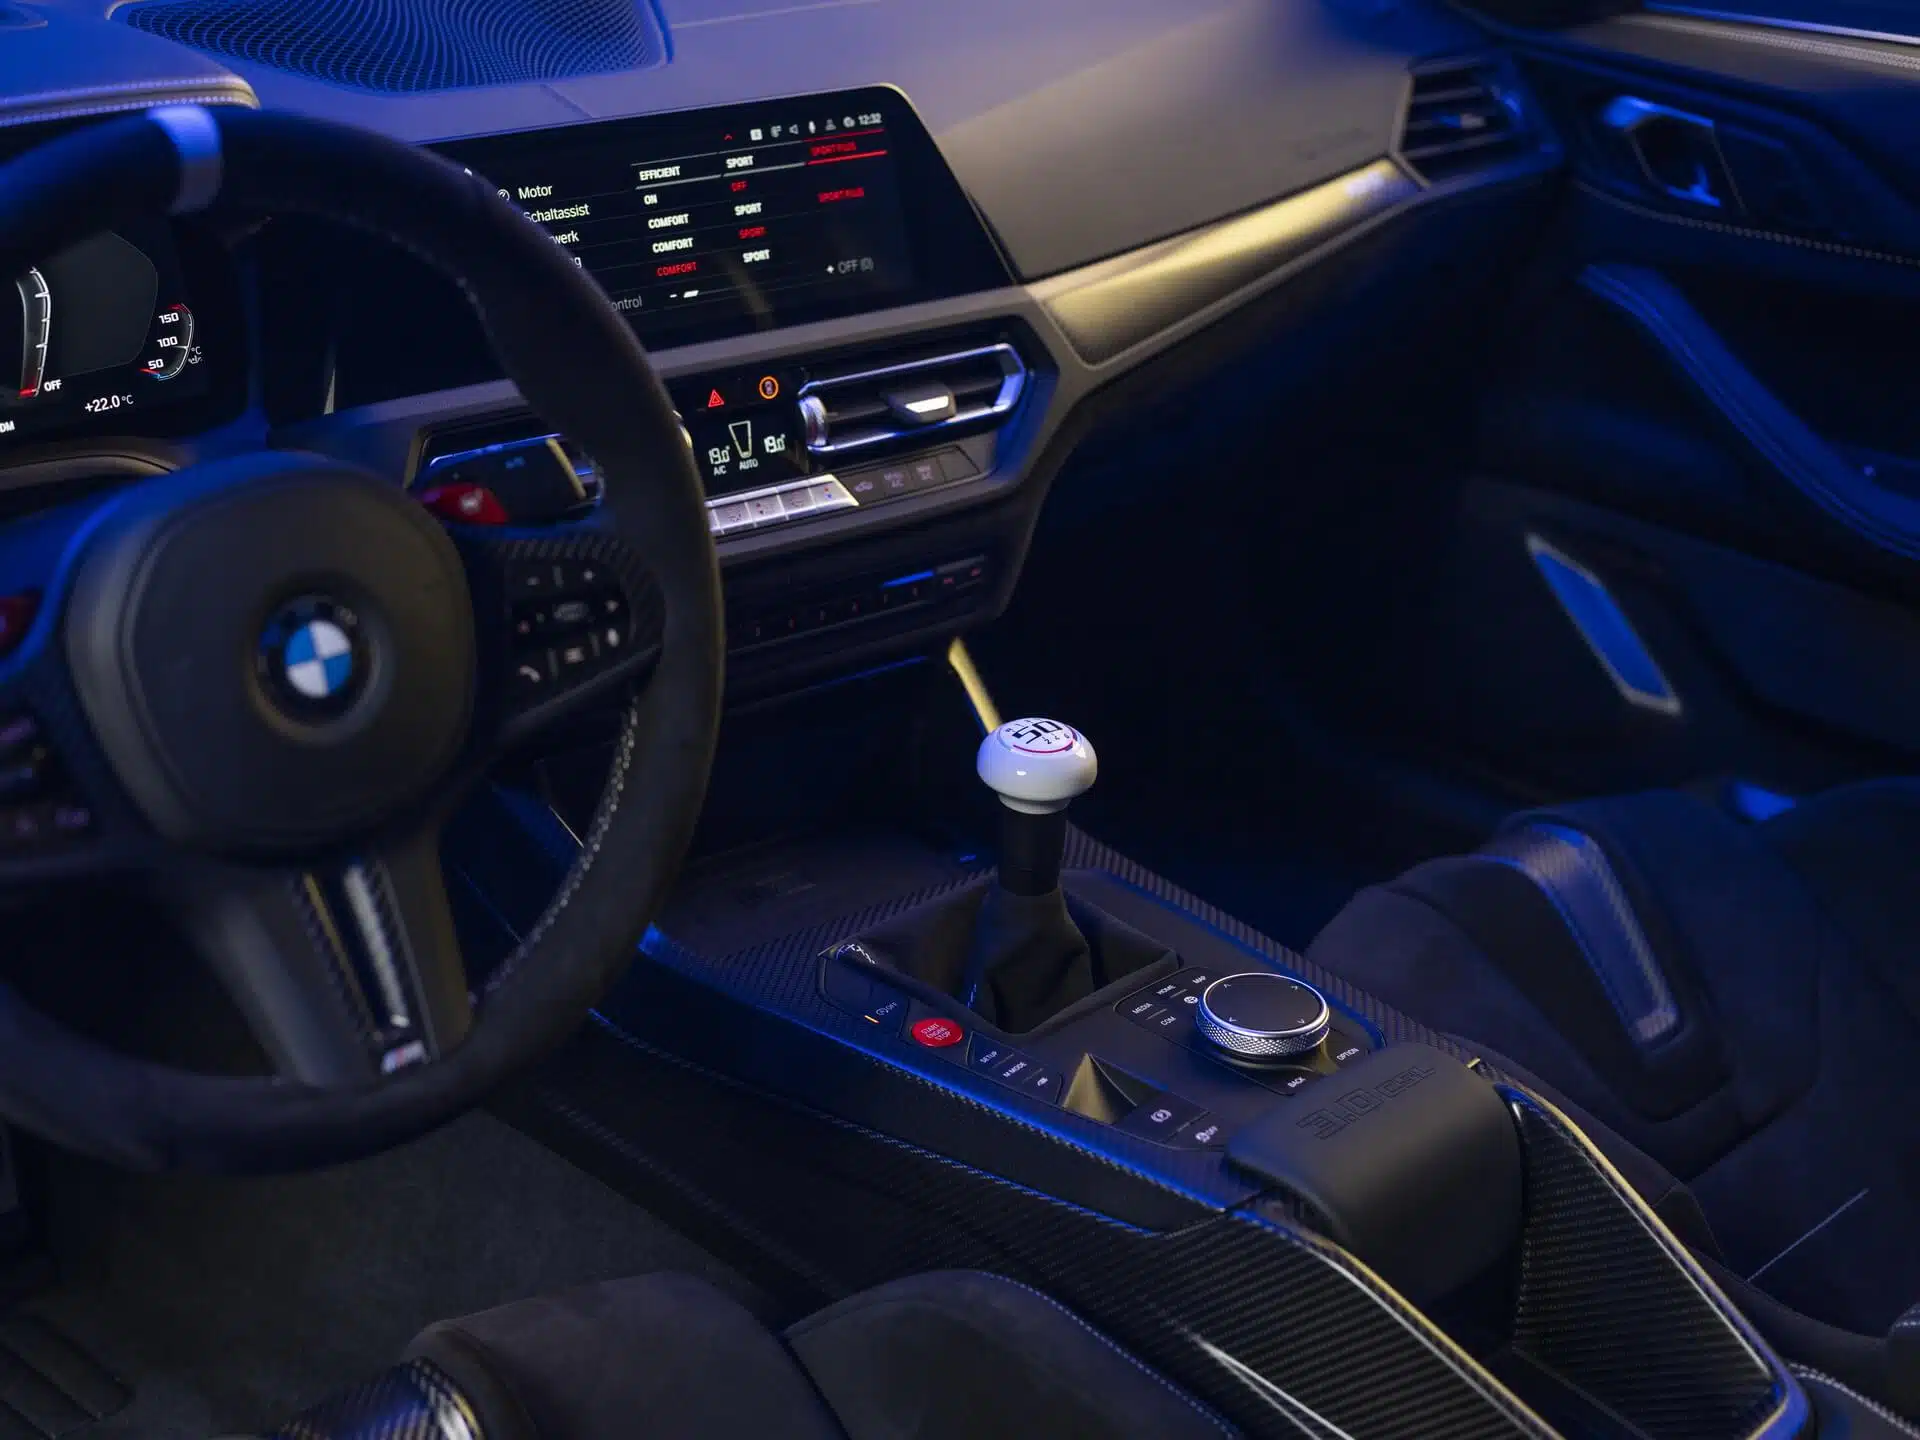 BMW 3.0 CSL pormenor caixa de velocidades